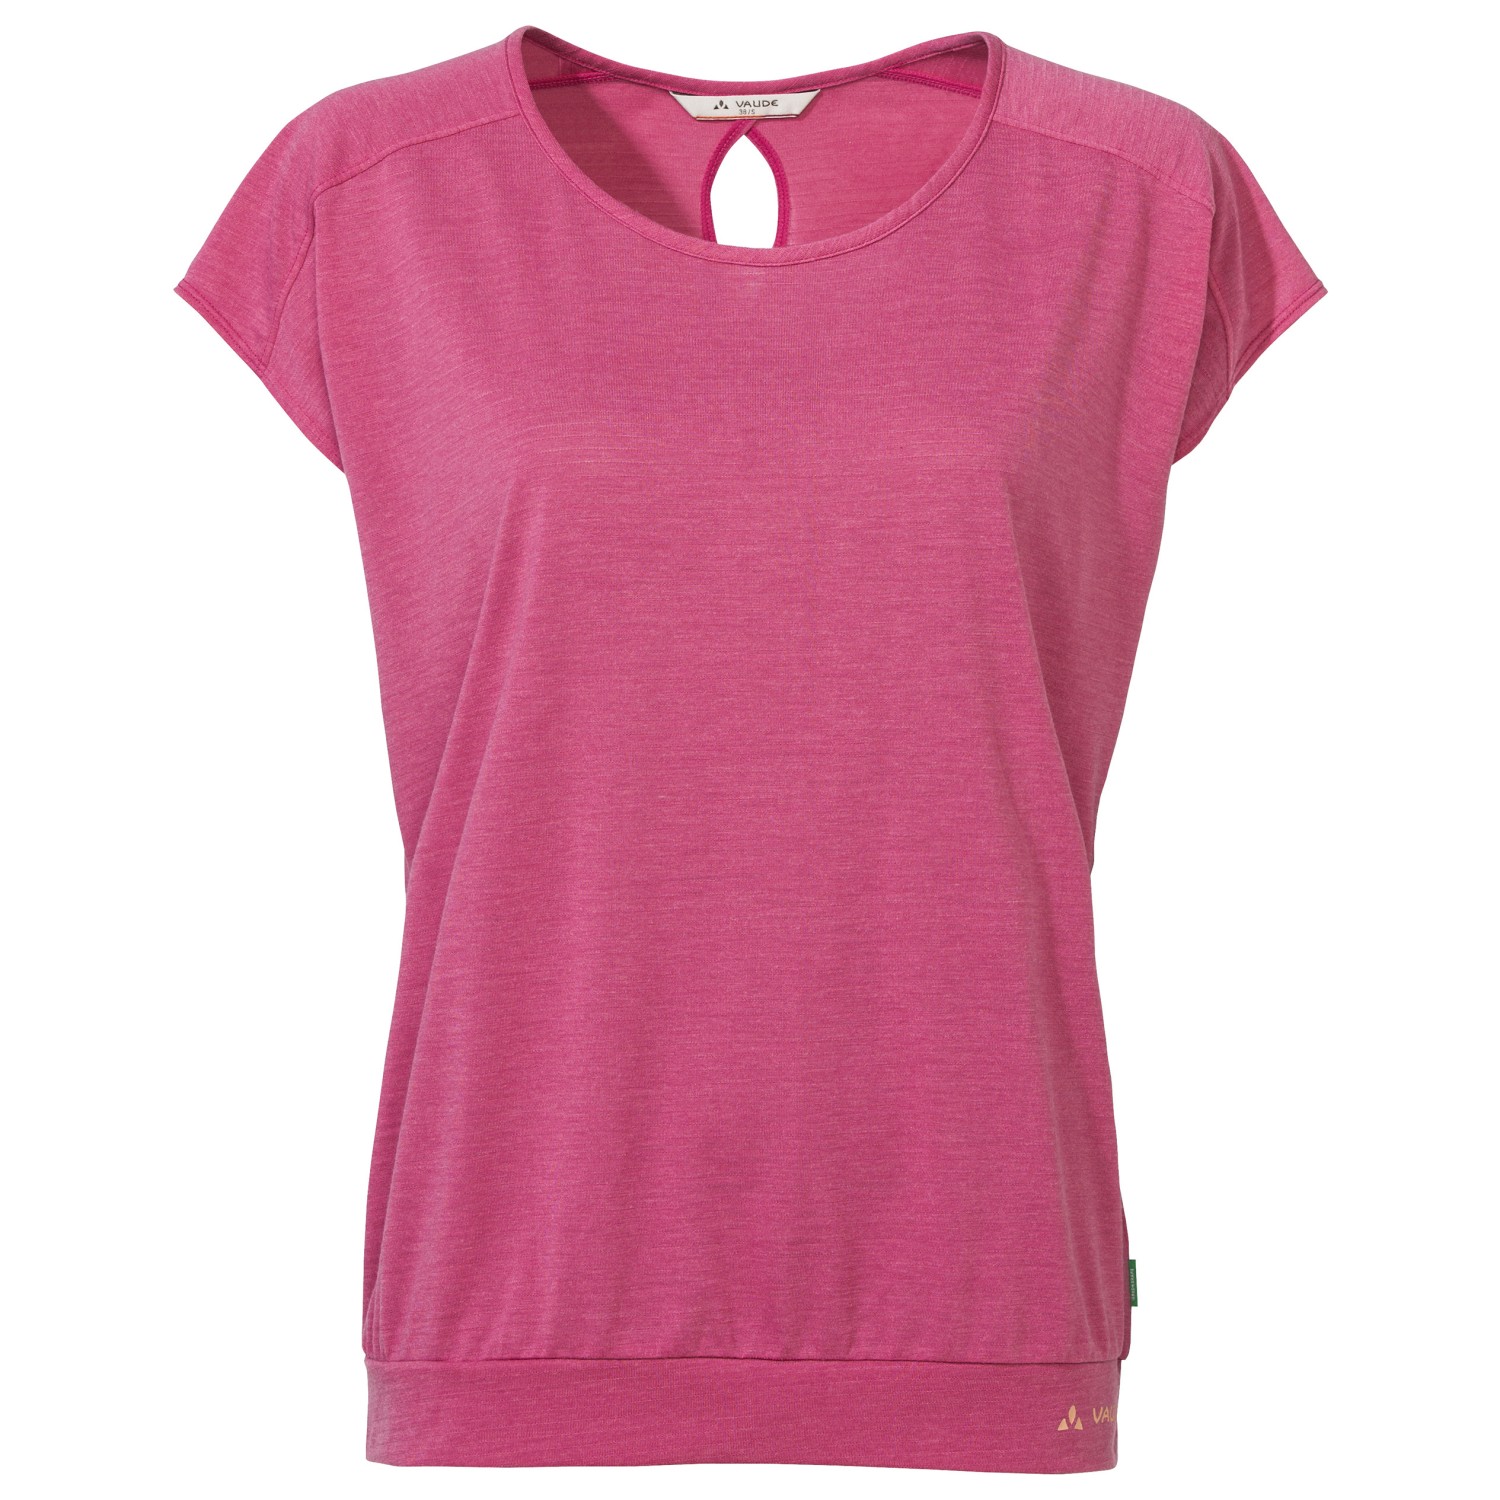 Функциональная рубашка Vaude Women's Skomer T Shirt III, цвет Lotus Pink функциональная рубашка vaude tekoa t shirt iii цвет nordic blue